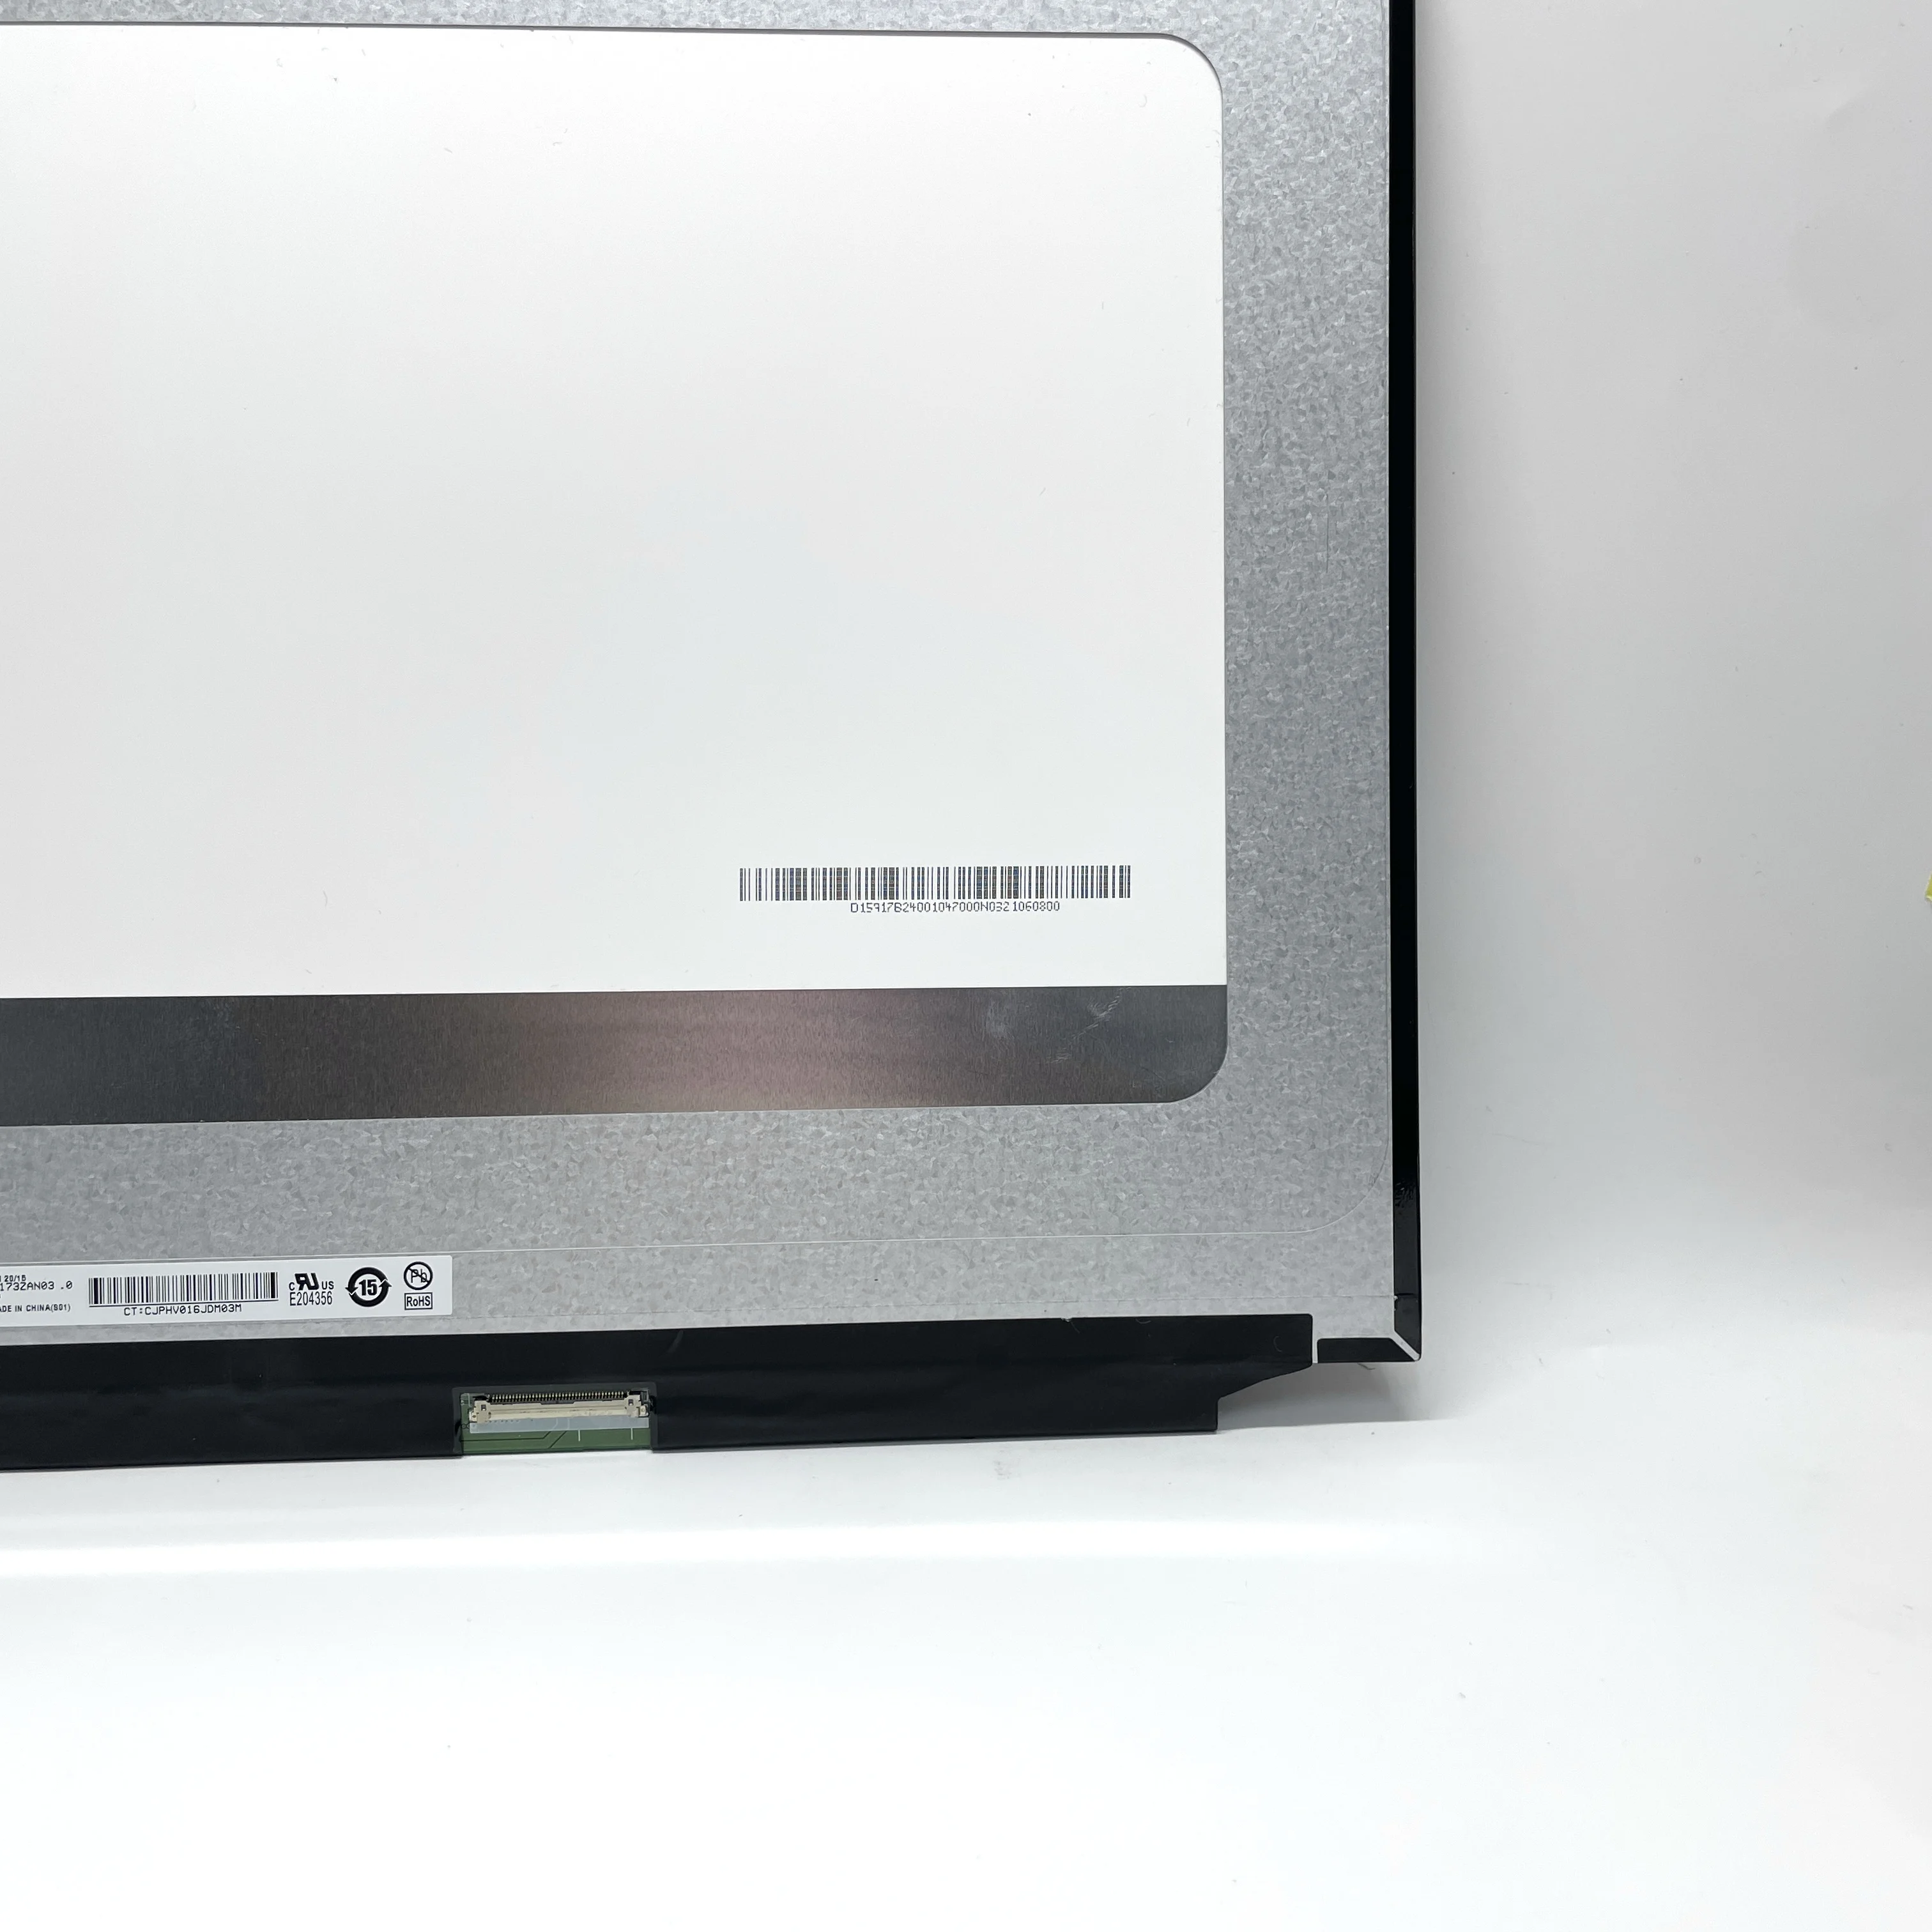 B173ZAN03.0 17,3-дюймовый ноутбук с тонким ЖК-экраном 4K, сменная матрица IPS 40 контактов 3840 (RGB) × 2160, UHD 255PPI, яркость 400 кд/м2